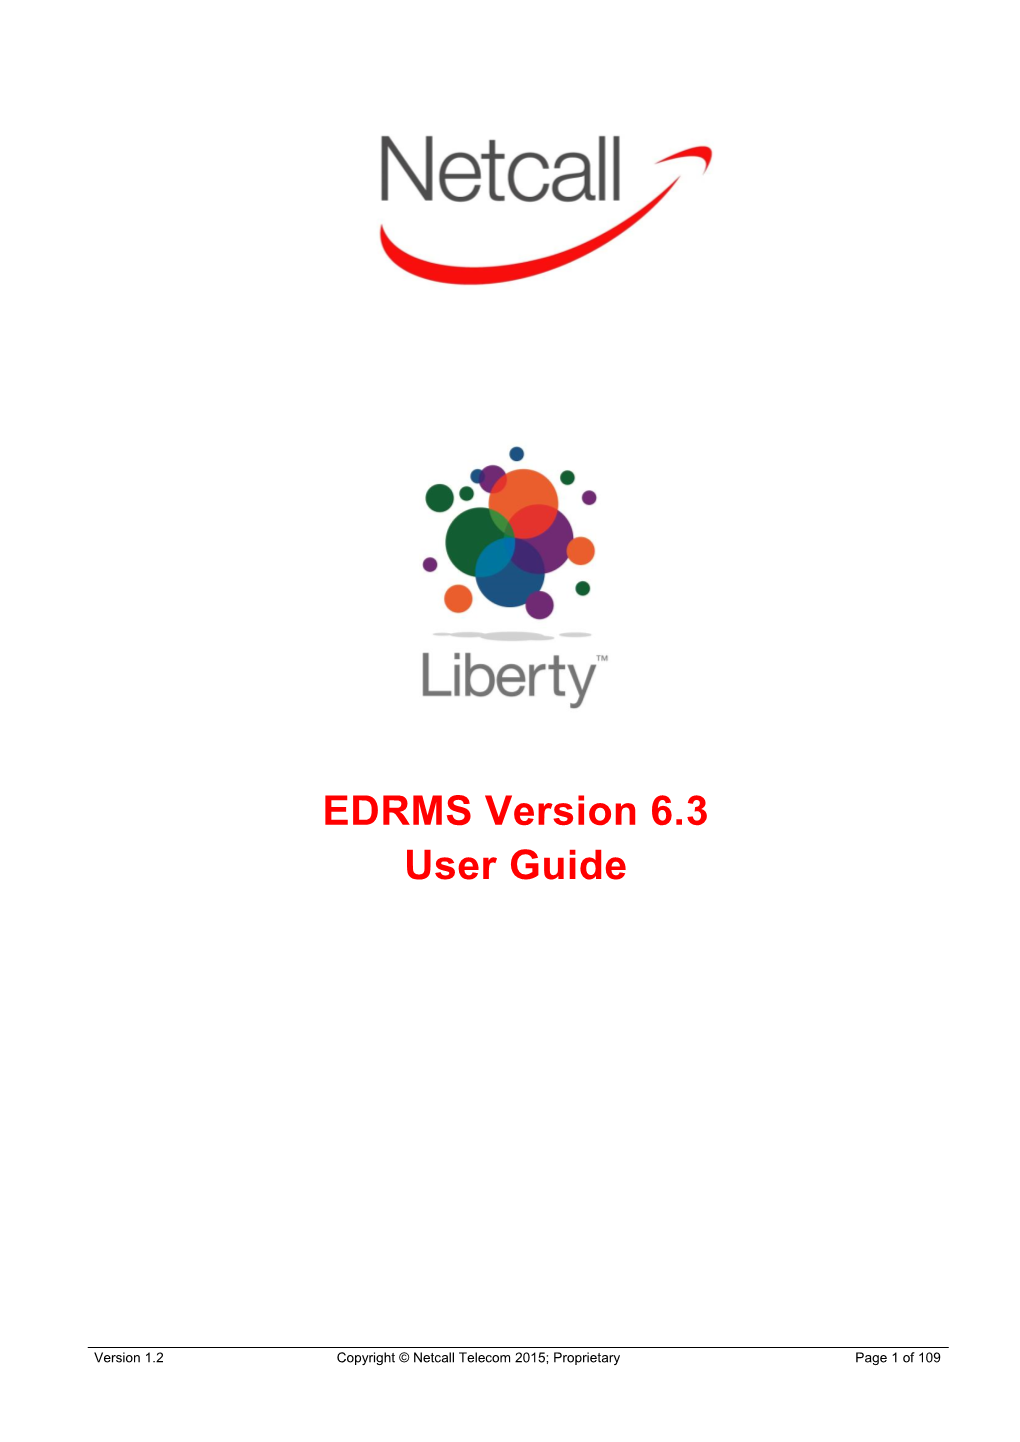 EDRMS Version 6.3 User Guide